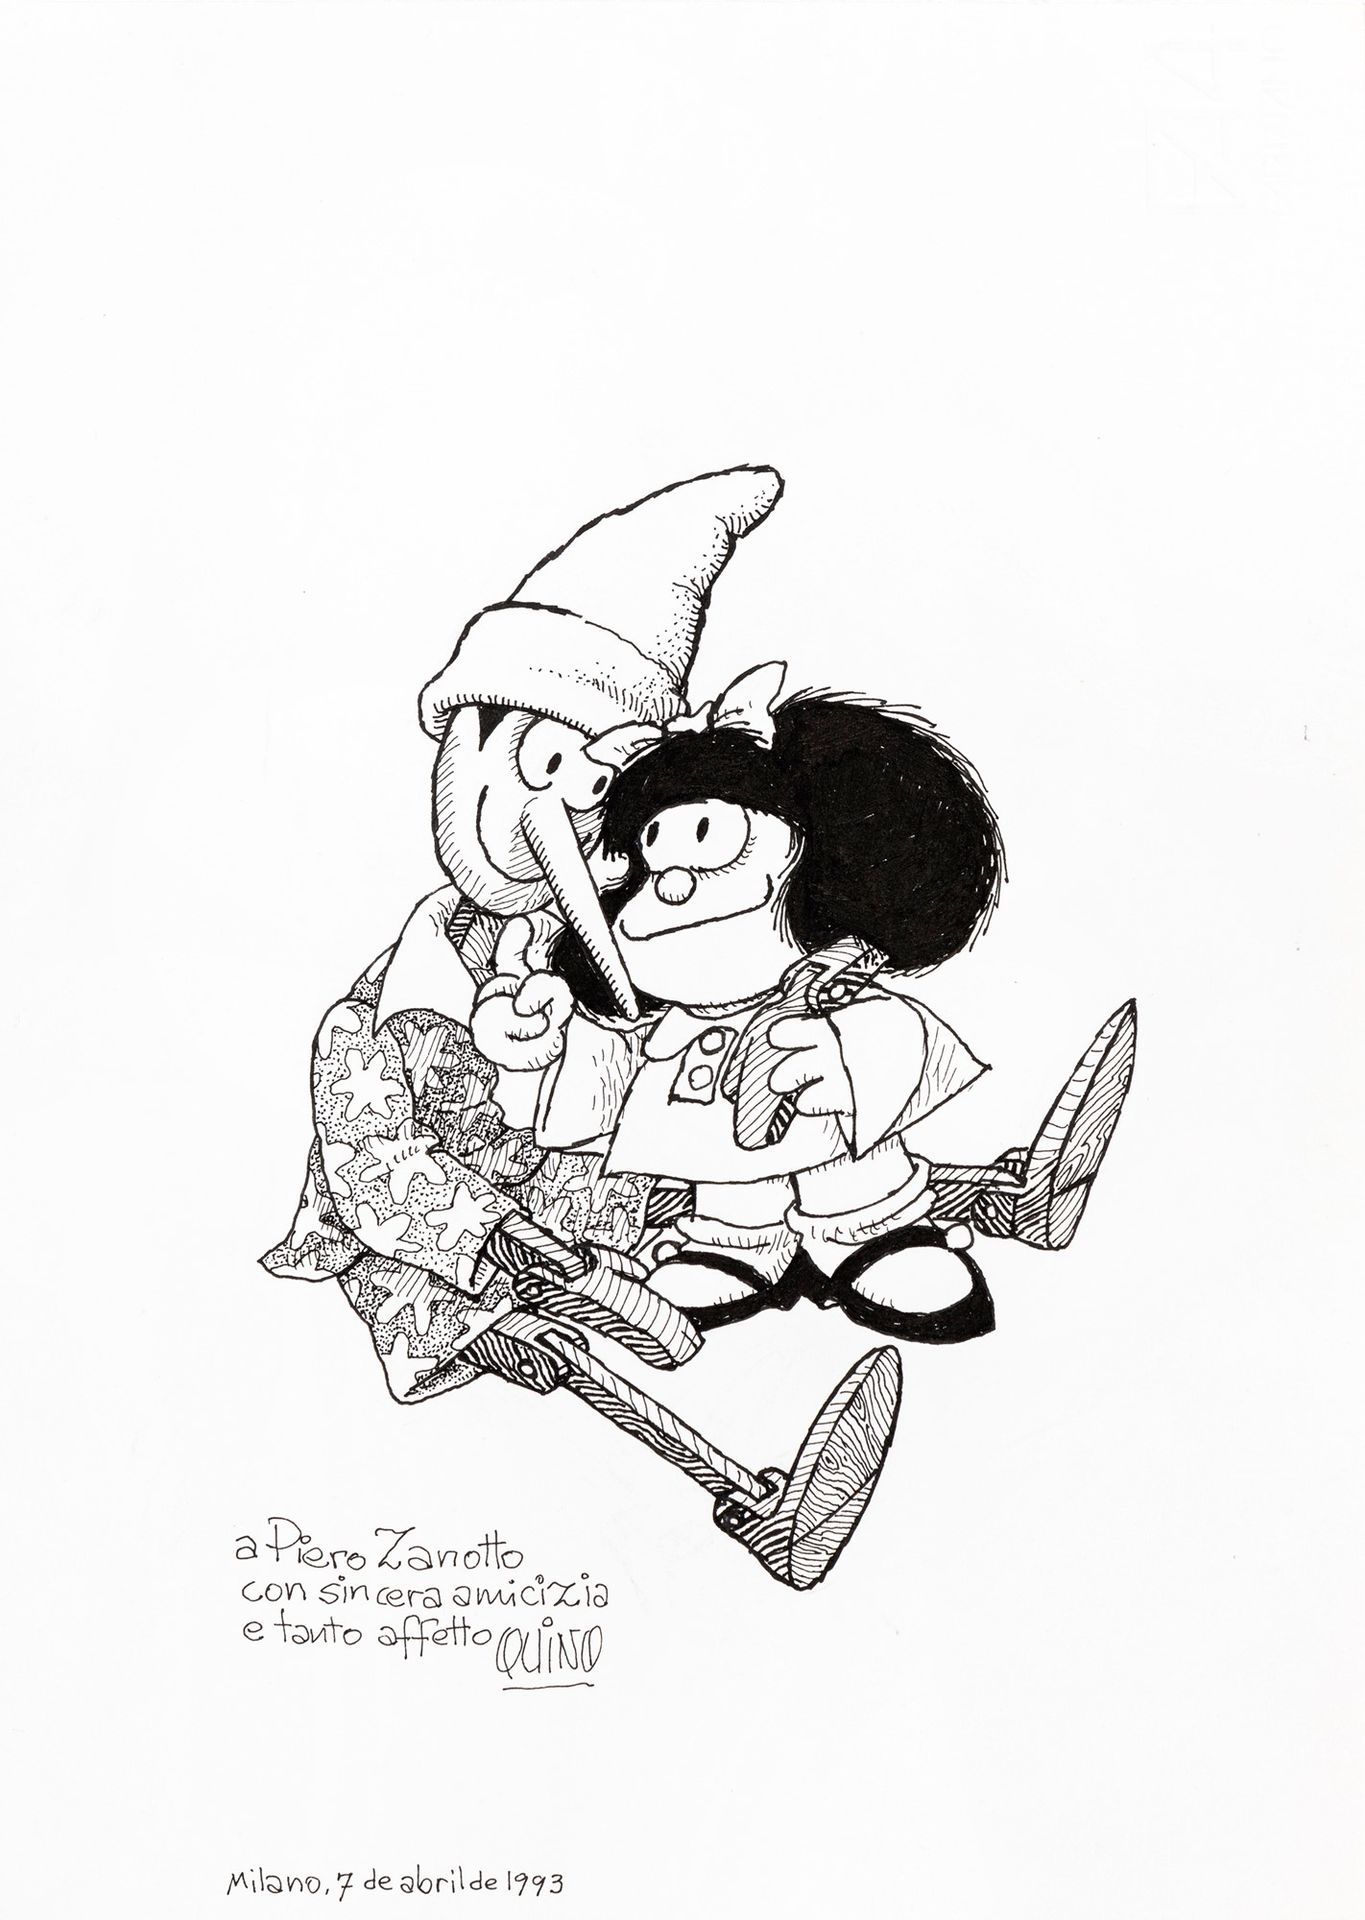 Quino (Joaquín Lavado) Pinocchio e Mafalda, 1993

pencil and ink on thin cardboa&hellip;